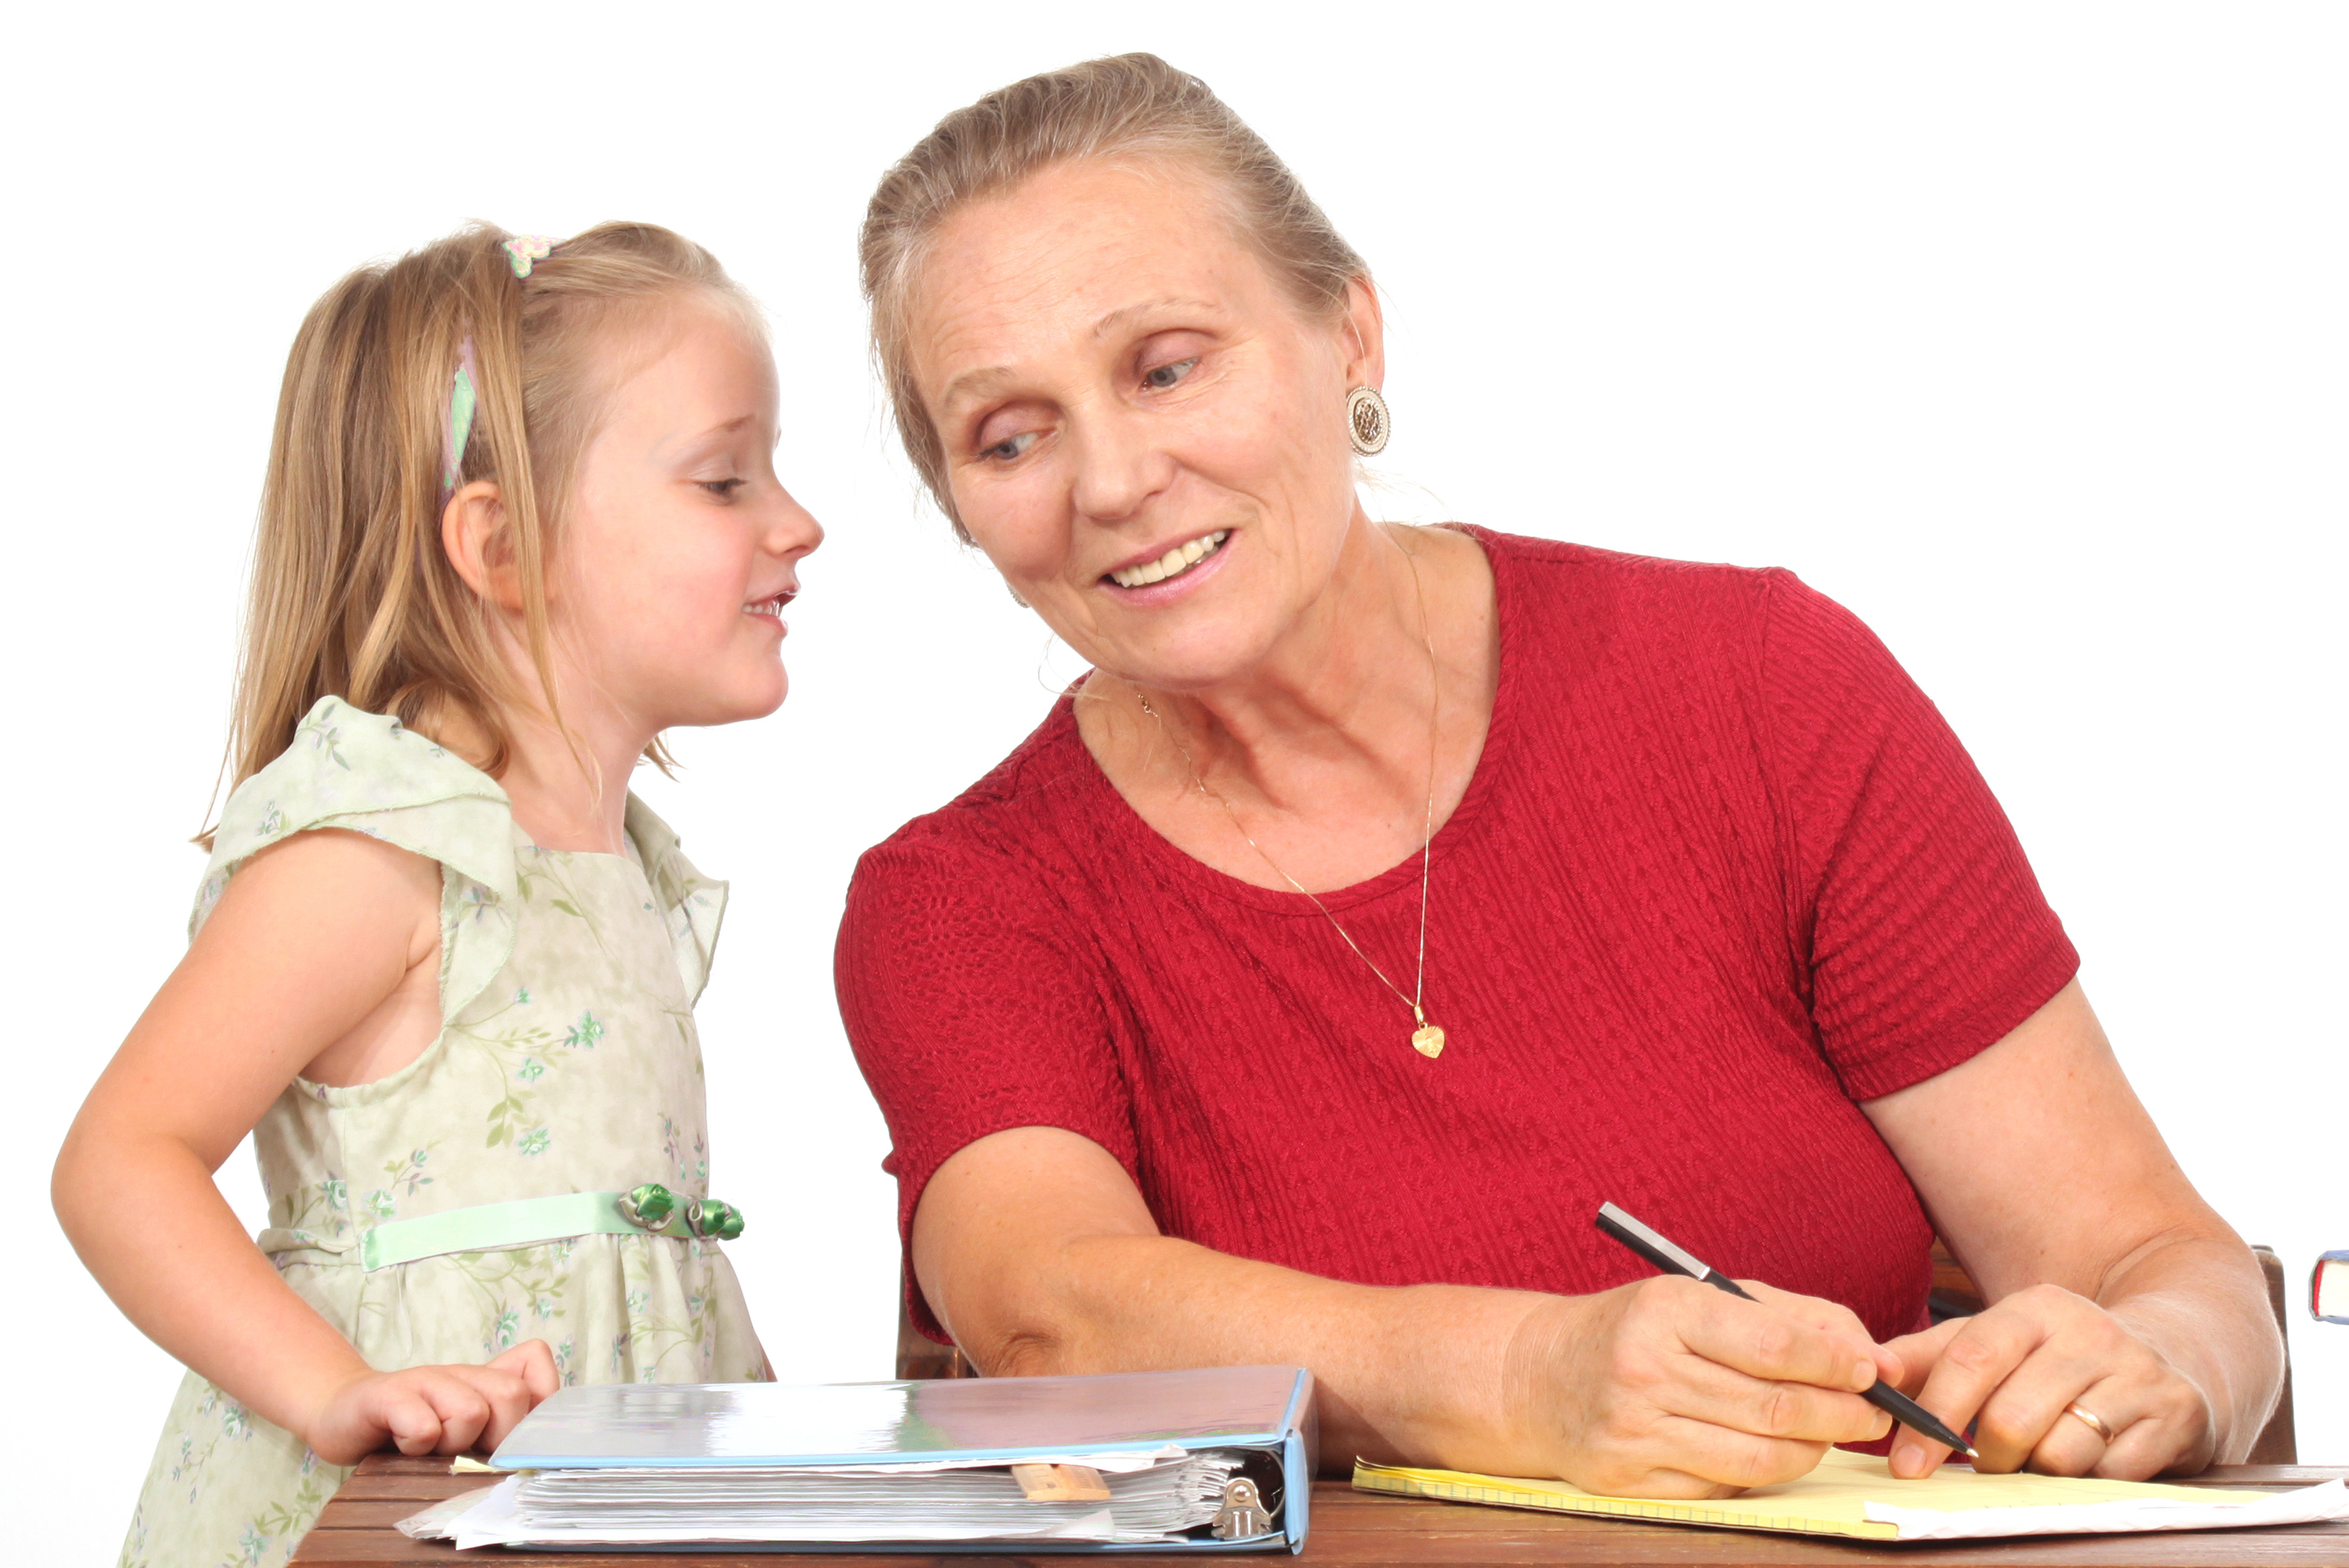 Una mujer mayor y una niña susurrándole al oído | Fuente: Shutterstock